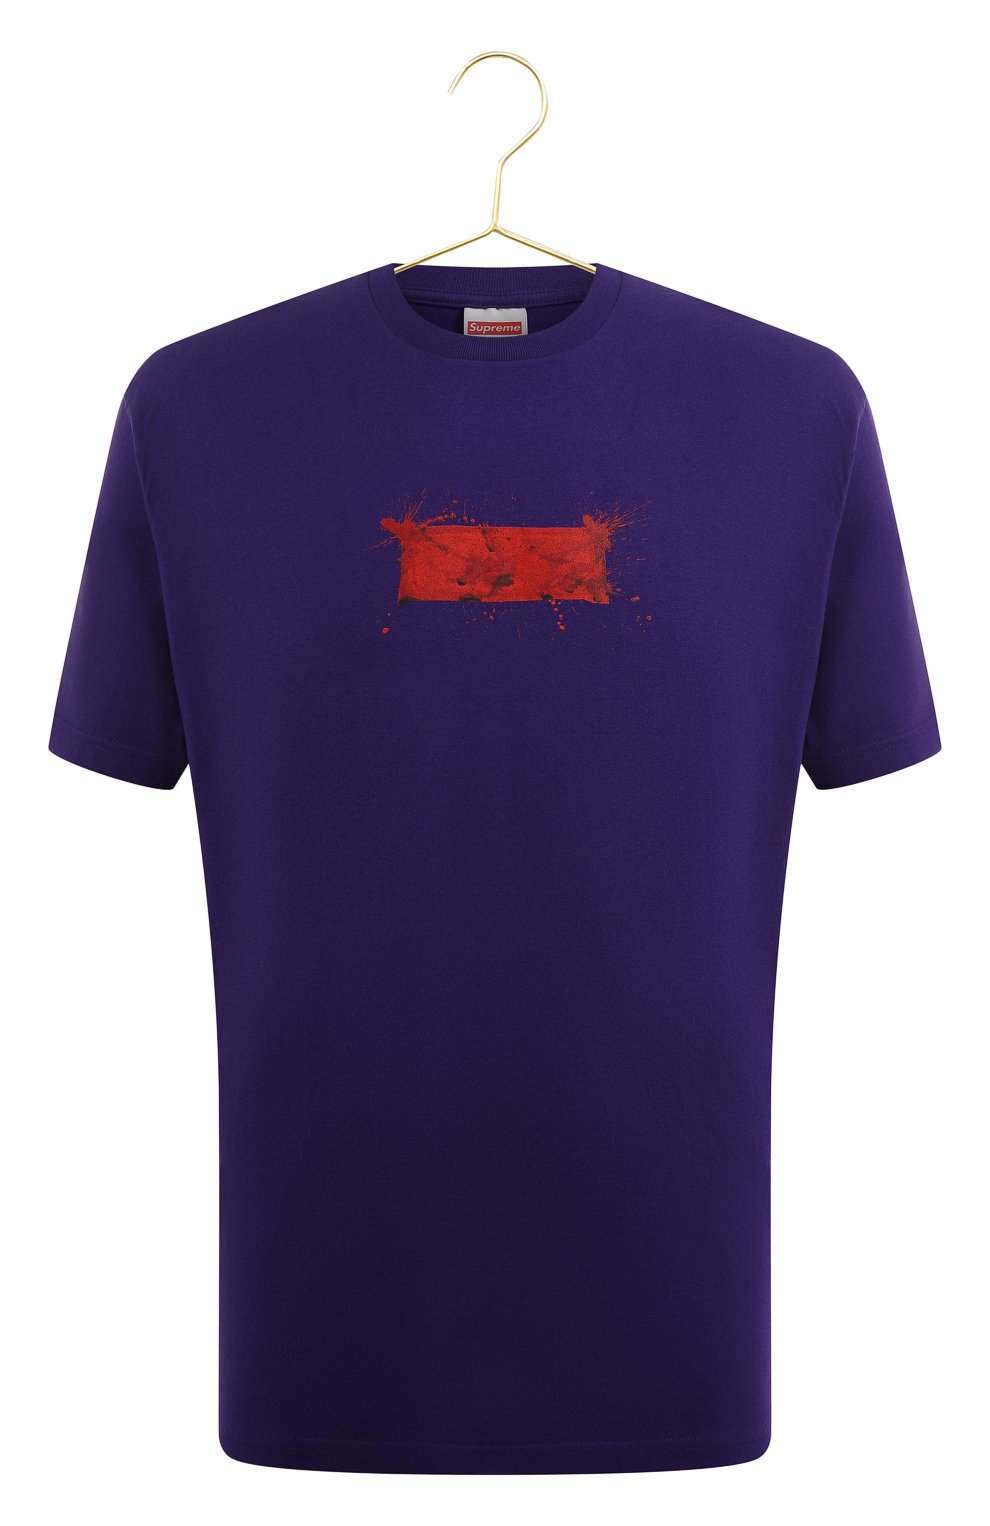 Хлопковая футболка | Supreme | Фиолетовый - 1